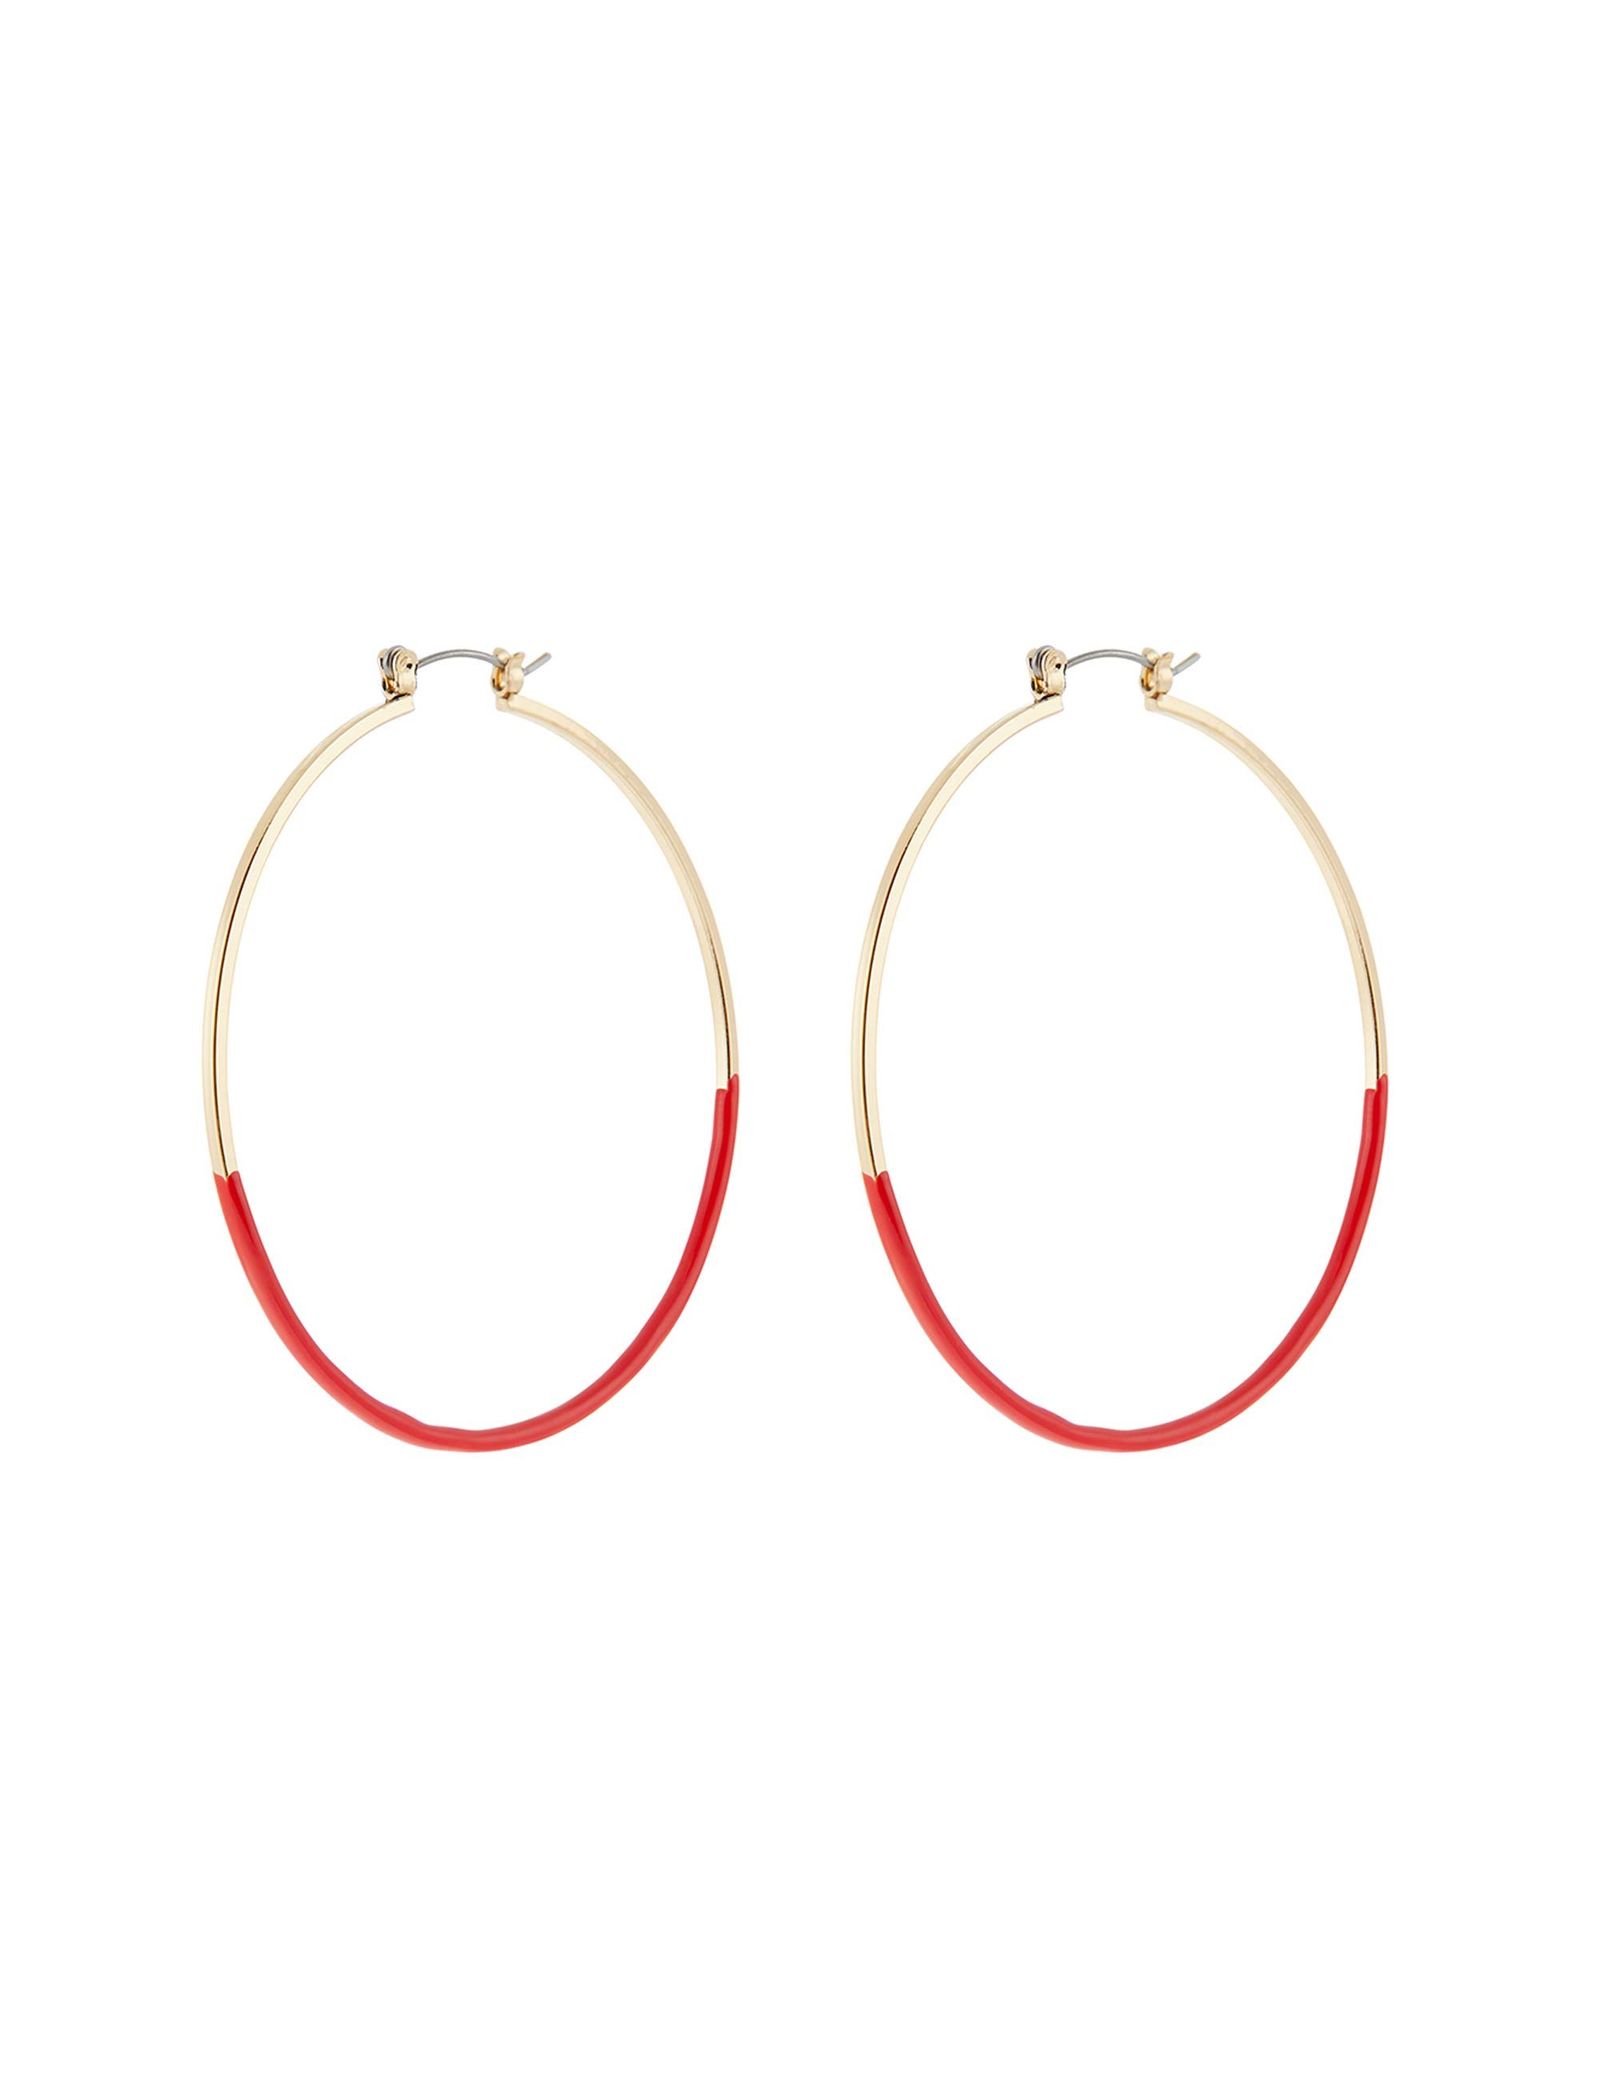 گوشواره استیل حلقه ای زنانه - اکسسورایز تک سایز - طلايي قرمز - 2